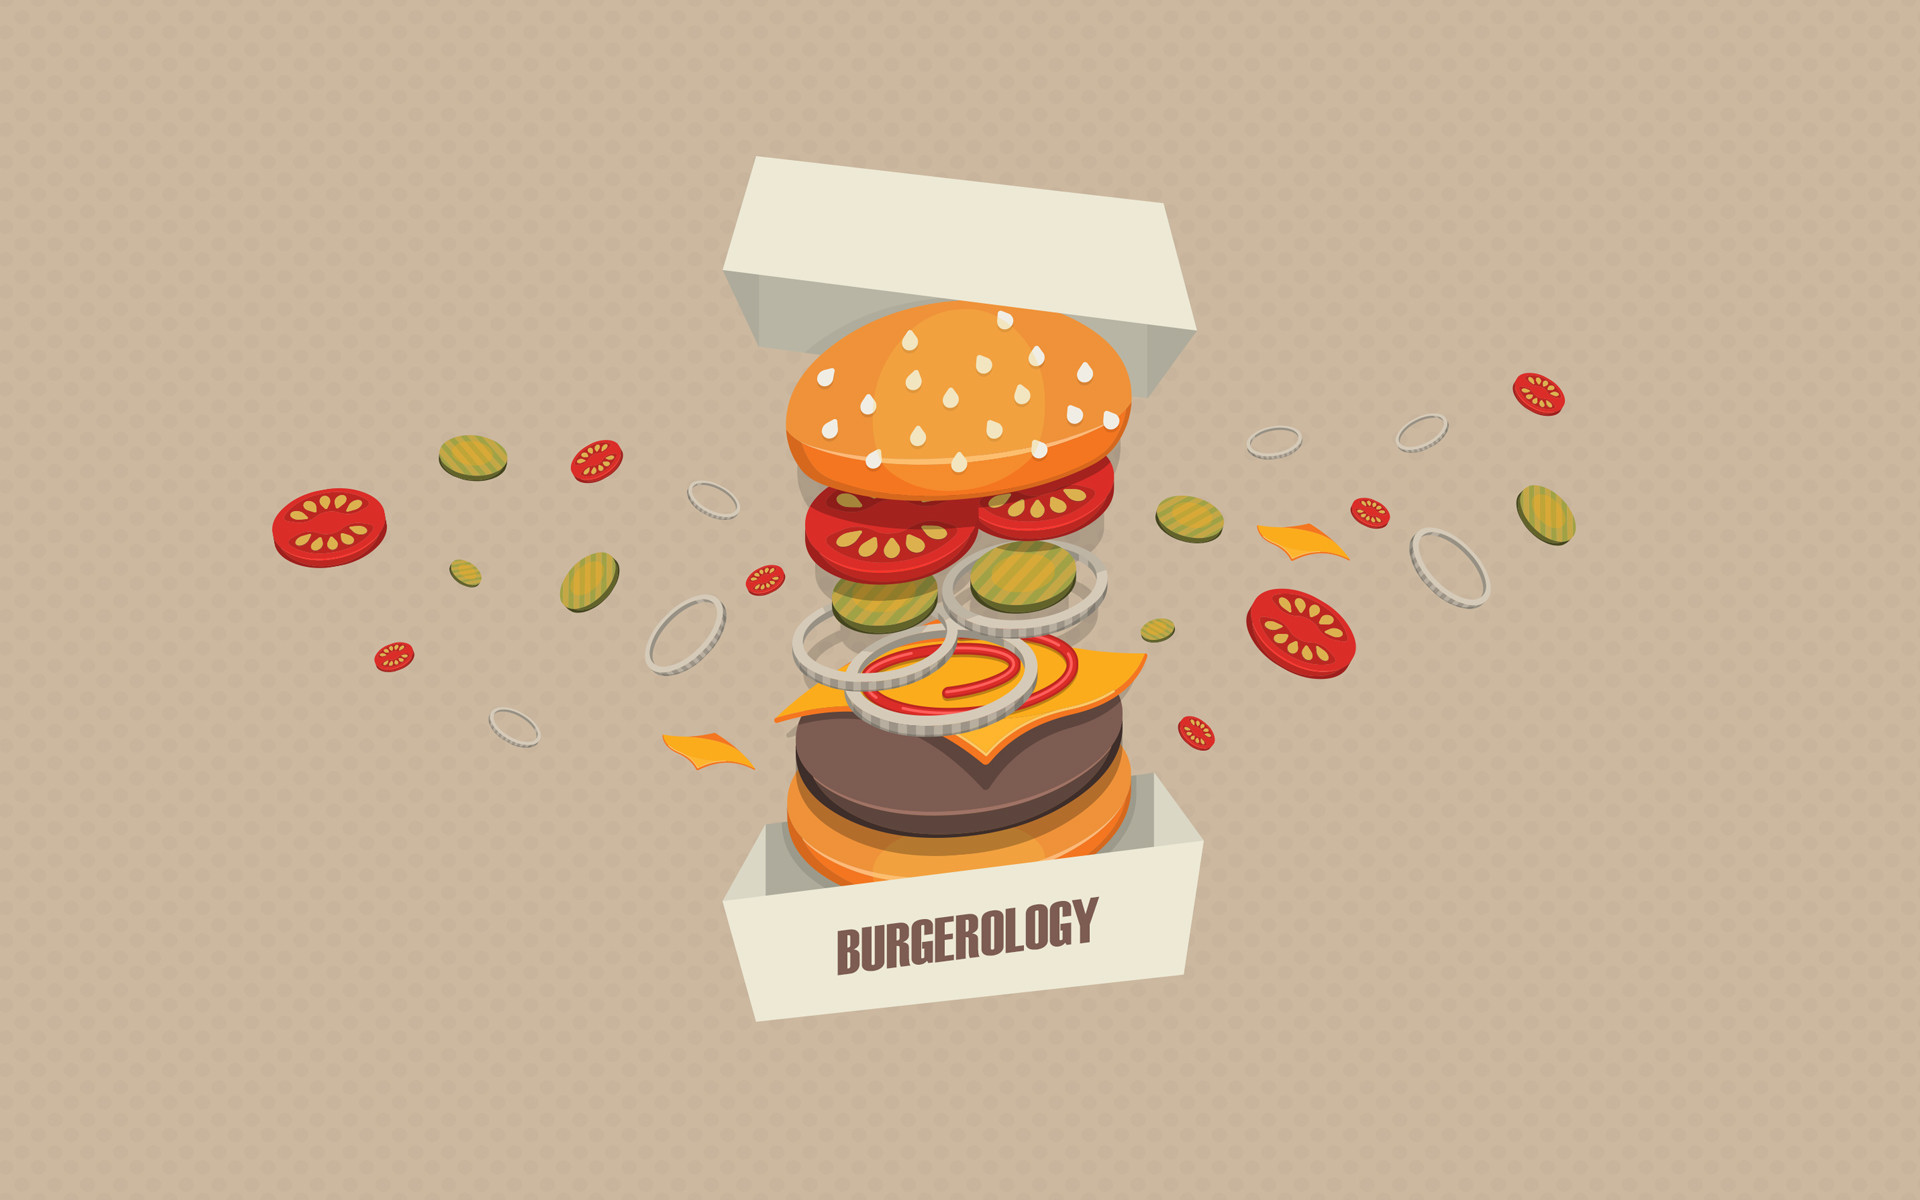 1920x1200 Image Burgerology Hamburger Fast food Food Vector Graphics 